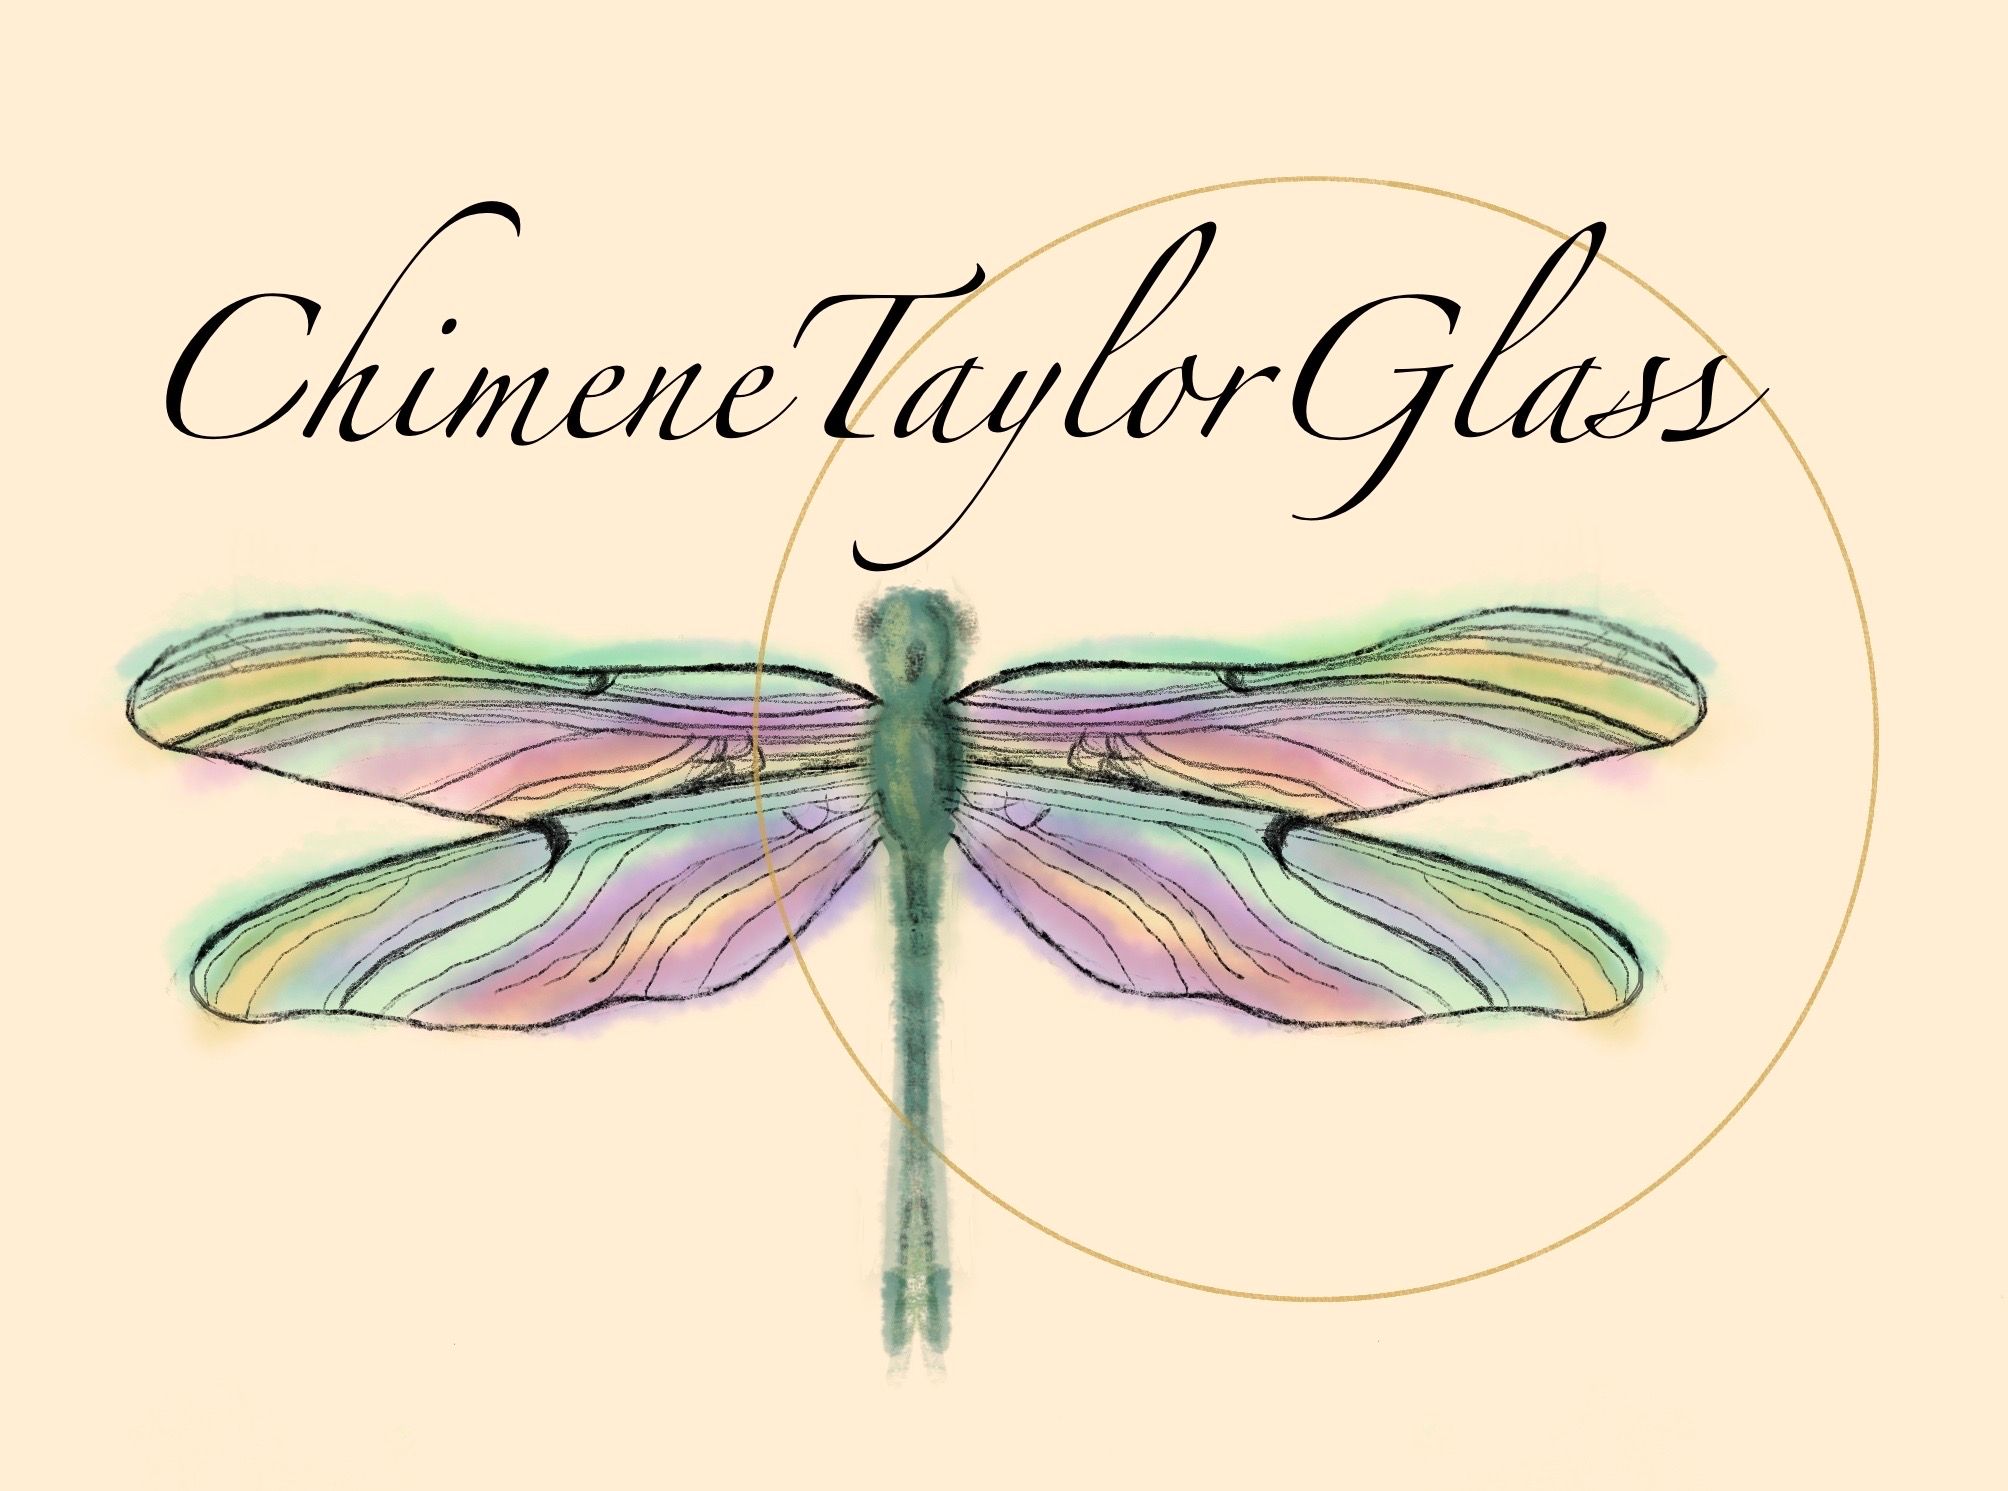 Chimene Taylor Glass